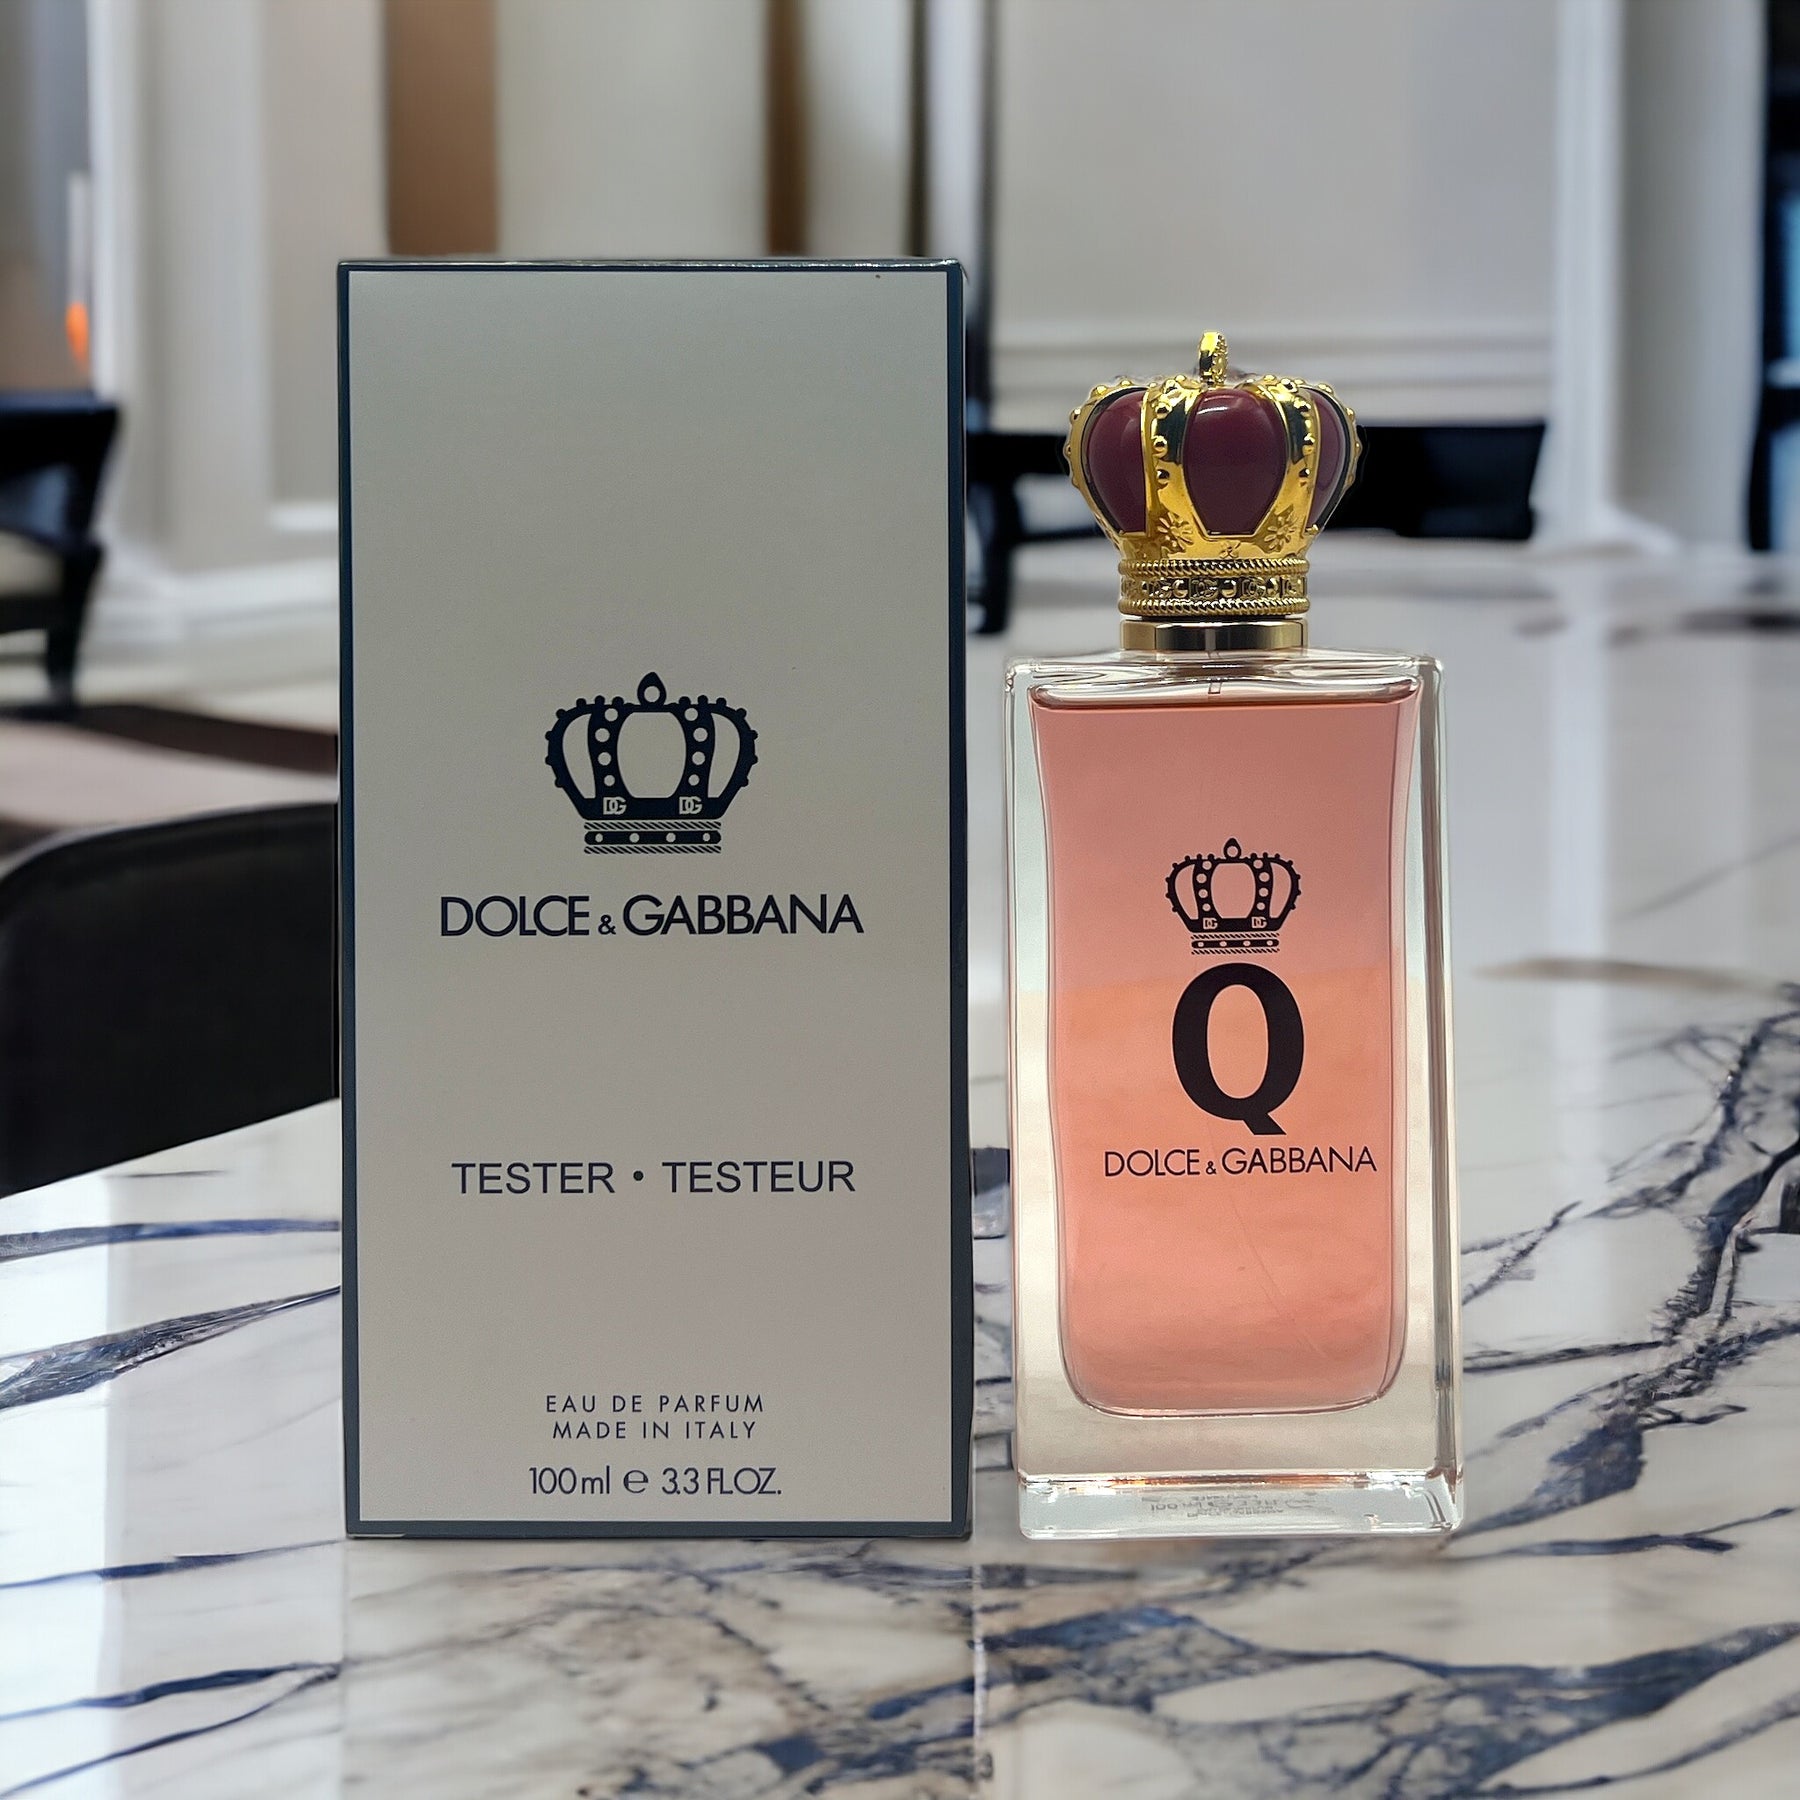 Dolce & Gabbana's Sun-Kissed Fragrance